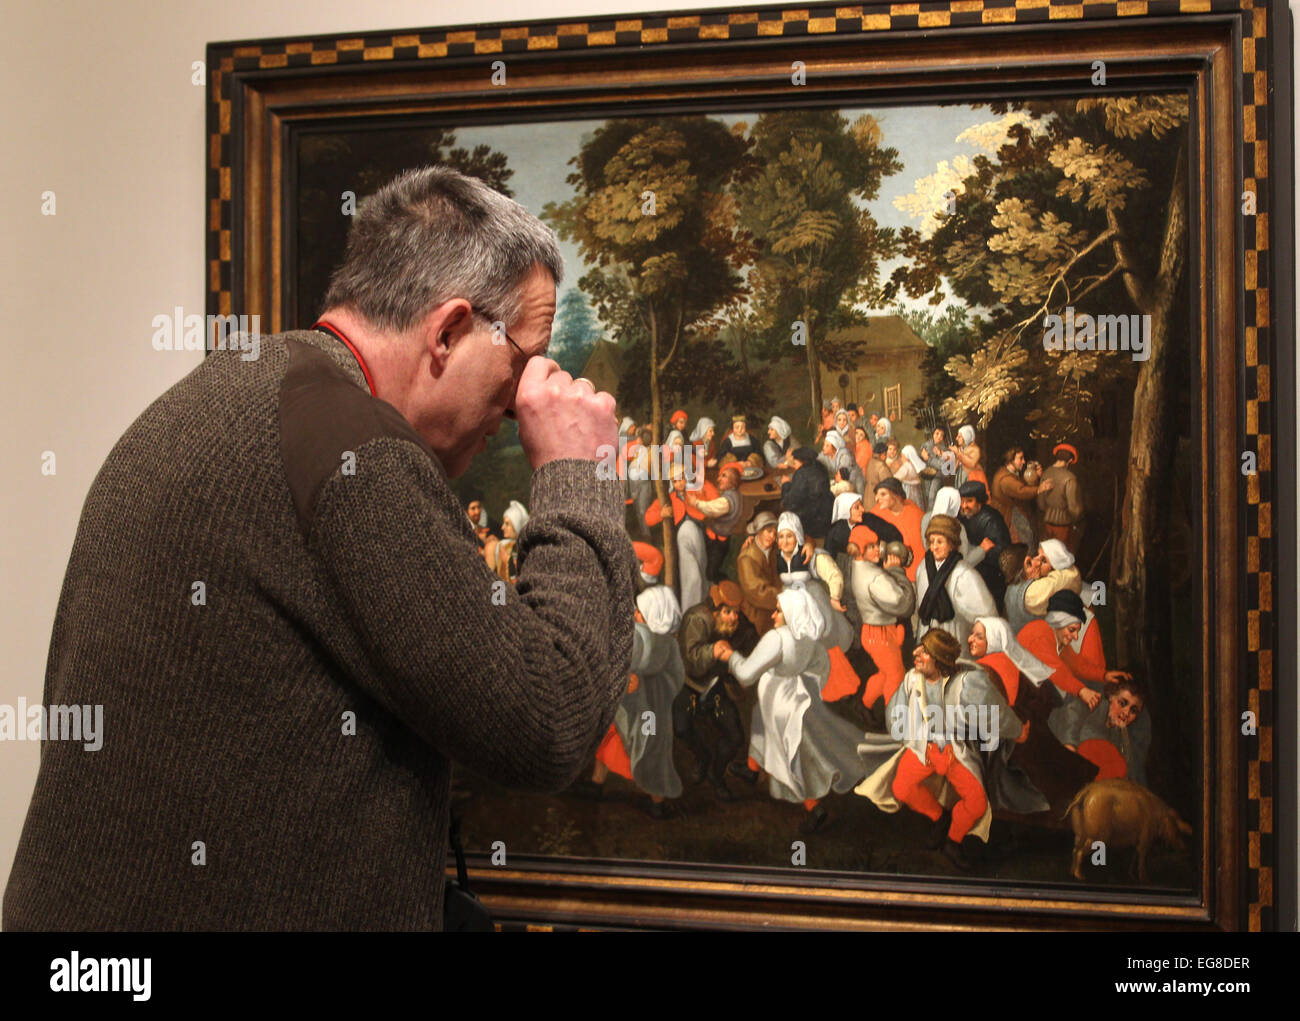 Paderborn, Allemagne. Feb 19, 2015. Une femme admire un tableau de Martin van Cleve (1520-1570) lors de l'exposition 'Die Brueghel-Familie' (La famille Brueghel) à Paderborn, Allemagne, 19 février 2015. PHOTO : INA FASSBENDER/dpa/Alamy Live News Banque D'Images